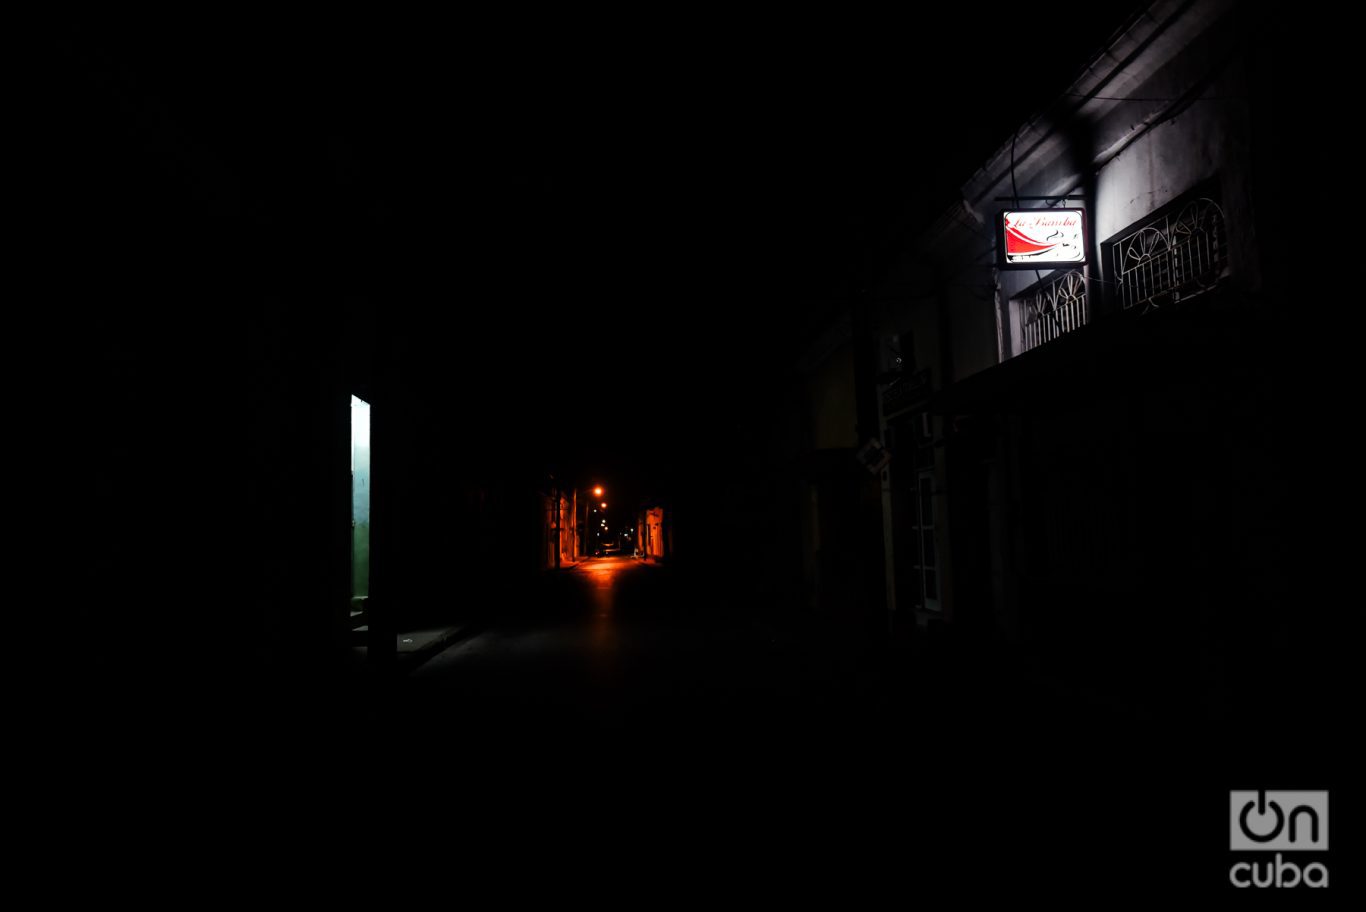 La calle Martí, una de las principales de la ciudad de Holguín temprano en la noche, casi completamente a oscuras. Foto: Kaloian.
